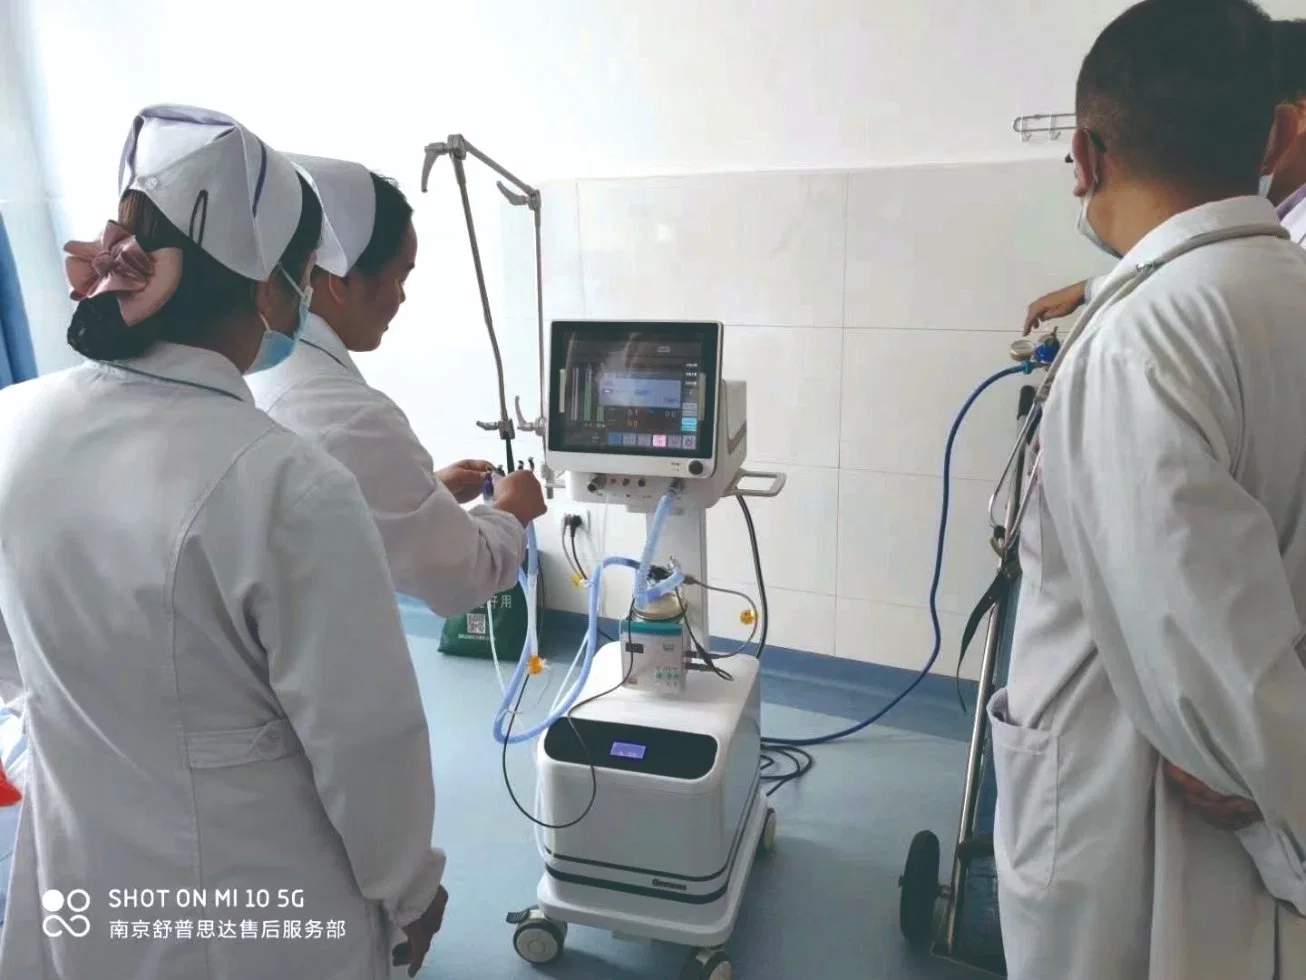 Медицинское оборудование Vaporizers анестезии рабочей станции хирургического инструмента